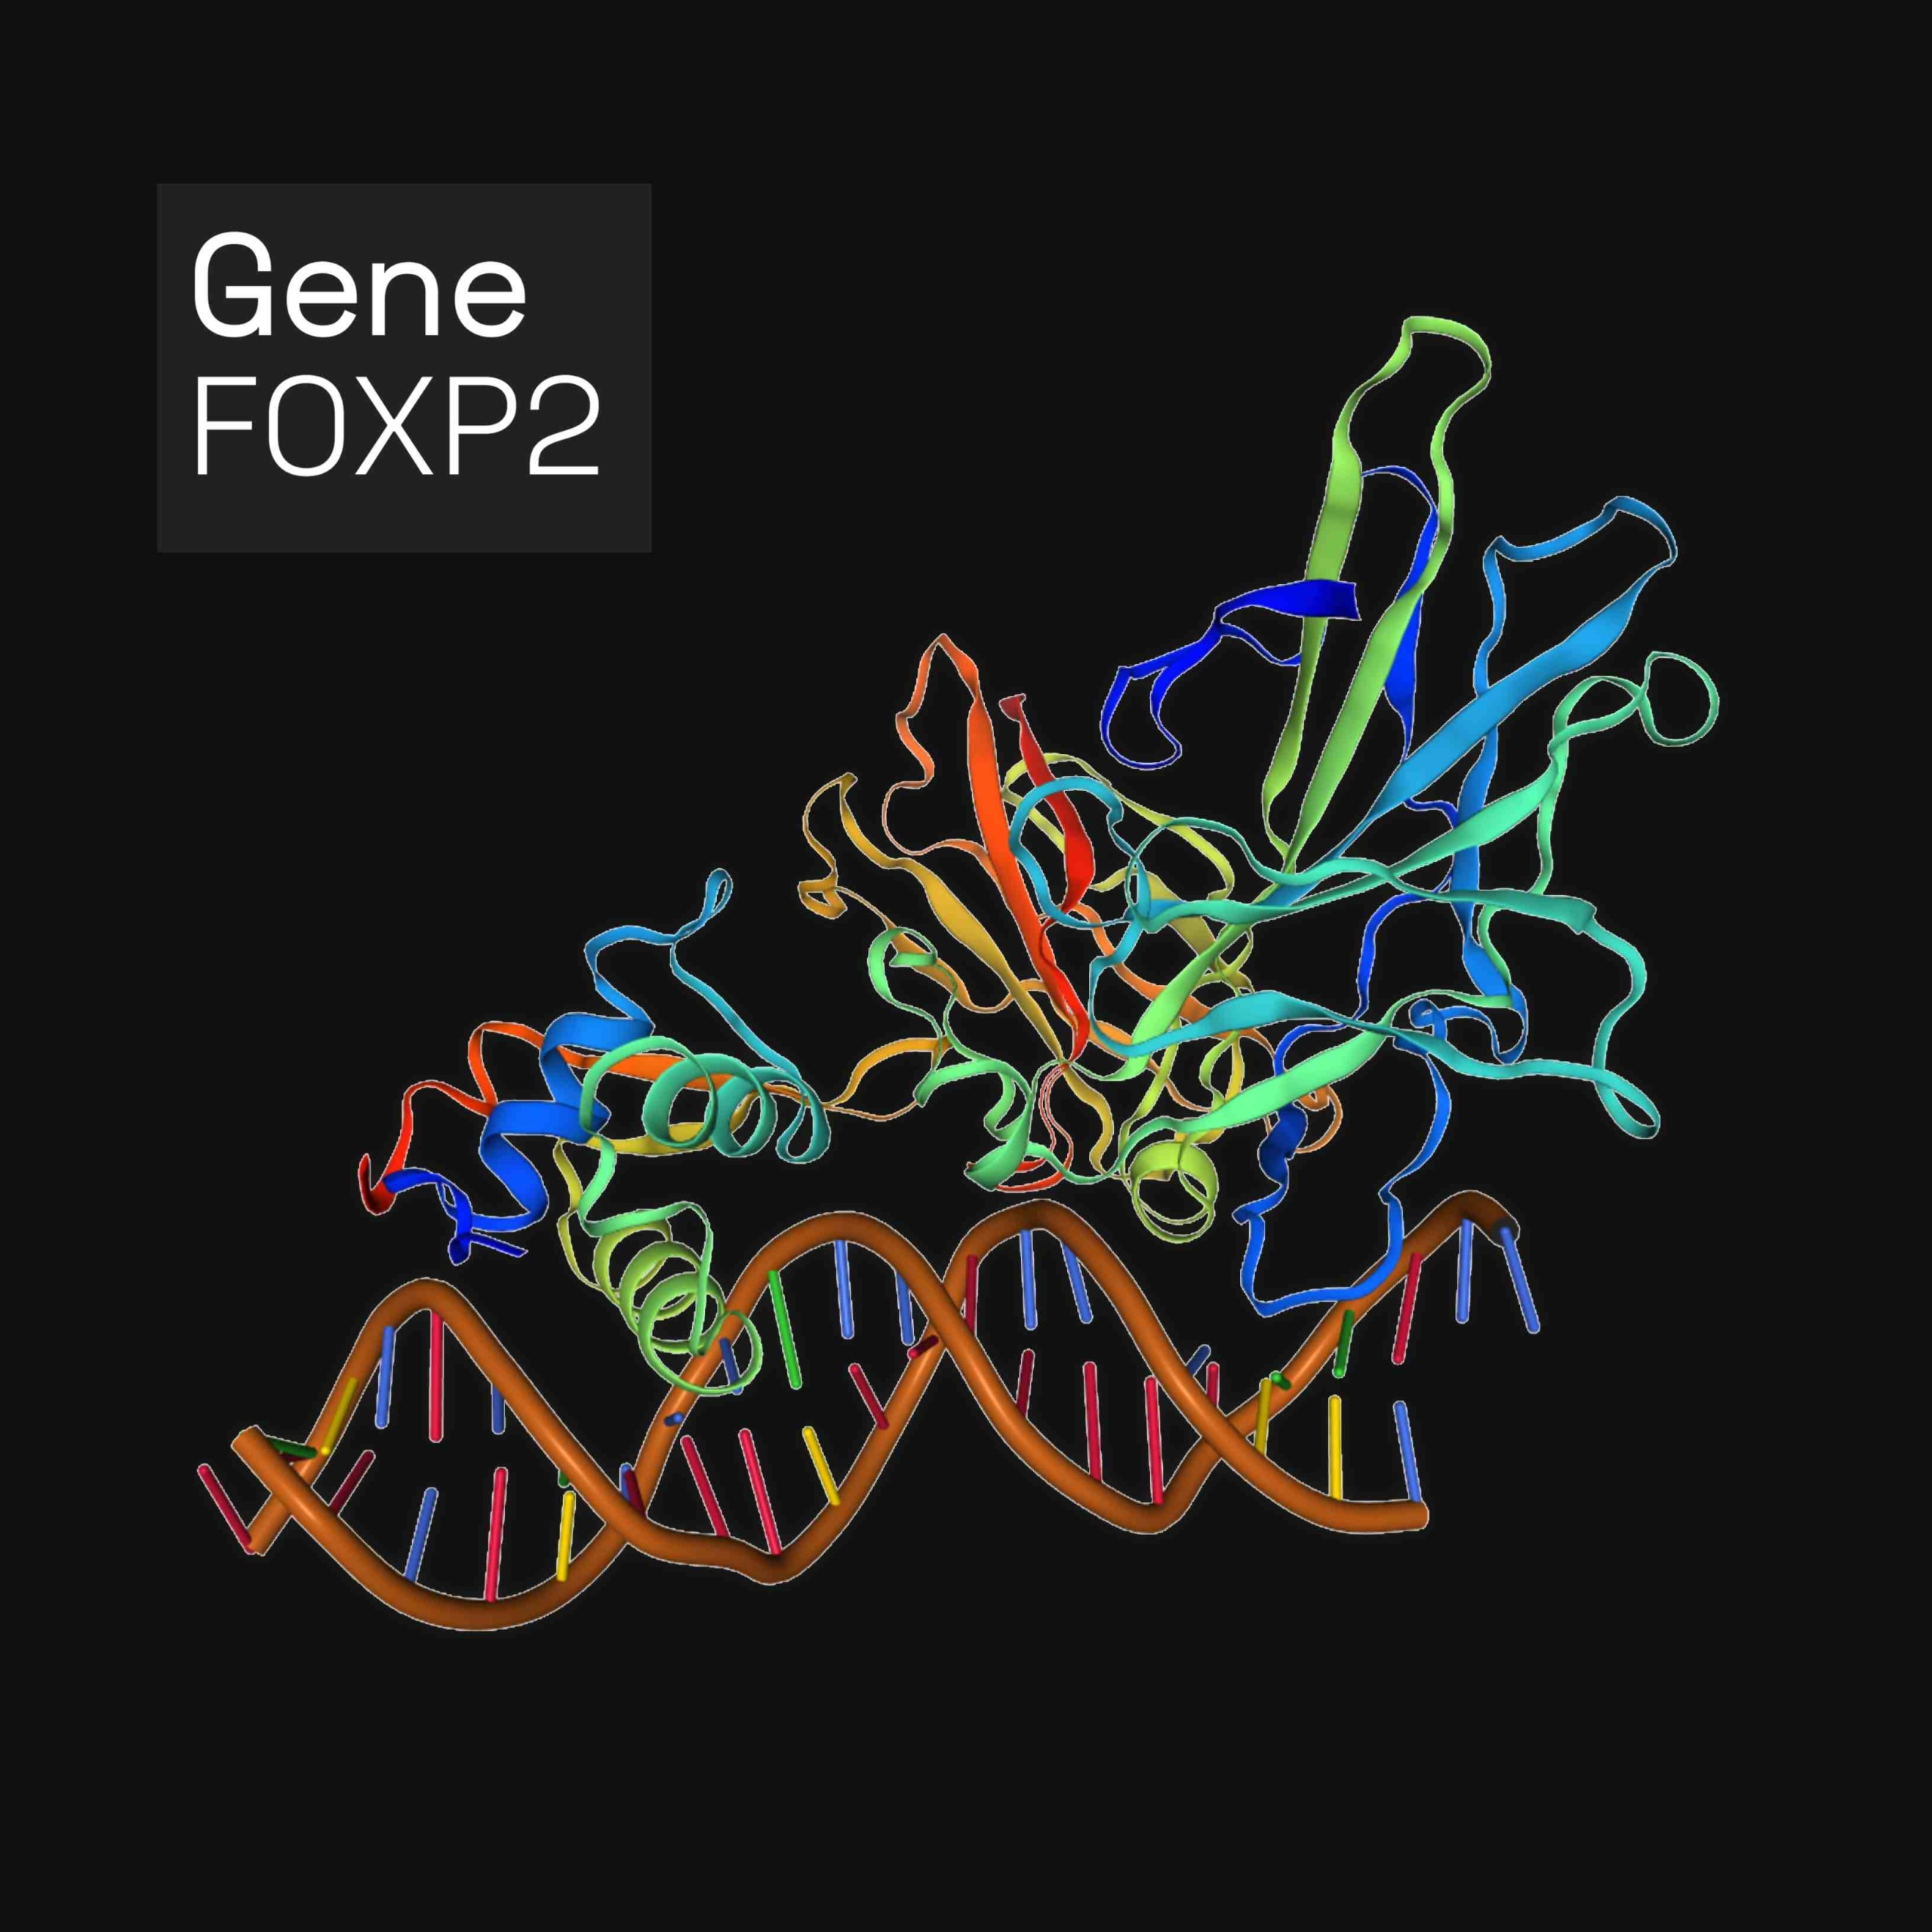 ಫೋರ್ಕ್‌ಹೆಡ್ ಬಾಕ್ಸ್ ಪ್ರೊಟೀನ್ P2 (FOXP2) ಒಂದು ಪ್ರೊಟೀನ್ ಆಗಿದ್ದು, ಇದು ಮಾನವರಲ್ಲಿ, FOXP2 ಜೀನ್‌ನಿಂದ ಎನ್‌ಕೋಡ್ ಮಾಡಲ್ಪಟ್ಟಿದೆ. FOXP2 ಪ್ರತಿಲೇಖನ ಅಂಶಗಳ ಫೋರ್ಕ್‌ಹೆಡ್ ಬಾಕ್ಸ್ ಕುಟುಂಬದ ಸದಸ್ಯ, ಡಿಎನ್‌ಎಗೆ ಬಂಧಿಸುವ ಮೂಲಕ ಜೀನ್ ಅಭಿವ್ಯಕ್ತಿಯನ್ನು ನಿಯಂತ್ರಿಸುವ ಪ್ರೋಟೀನ್‌ಗಳು. ಇದು ಮೆದುಳು, ಹೃದಯ, ಶ್ವಾಸಕೋಶ ಮತ್ತು ಜೀರ್ಣಾಂಗ ವ್ಯವಸ್ಥೆಯಲ್ಲಿ ವ್ಯಕ್ತವಾಗುತ್ತದೆ.